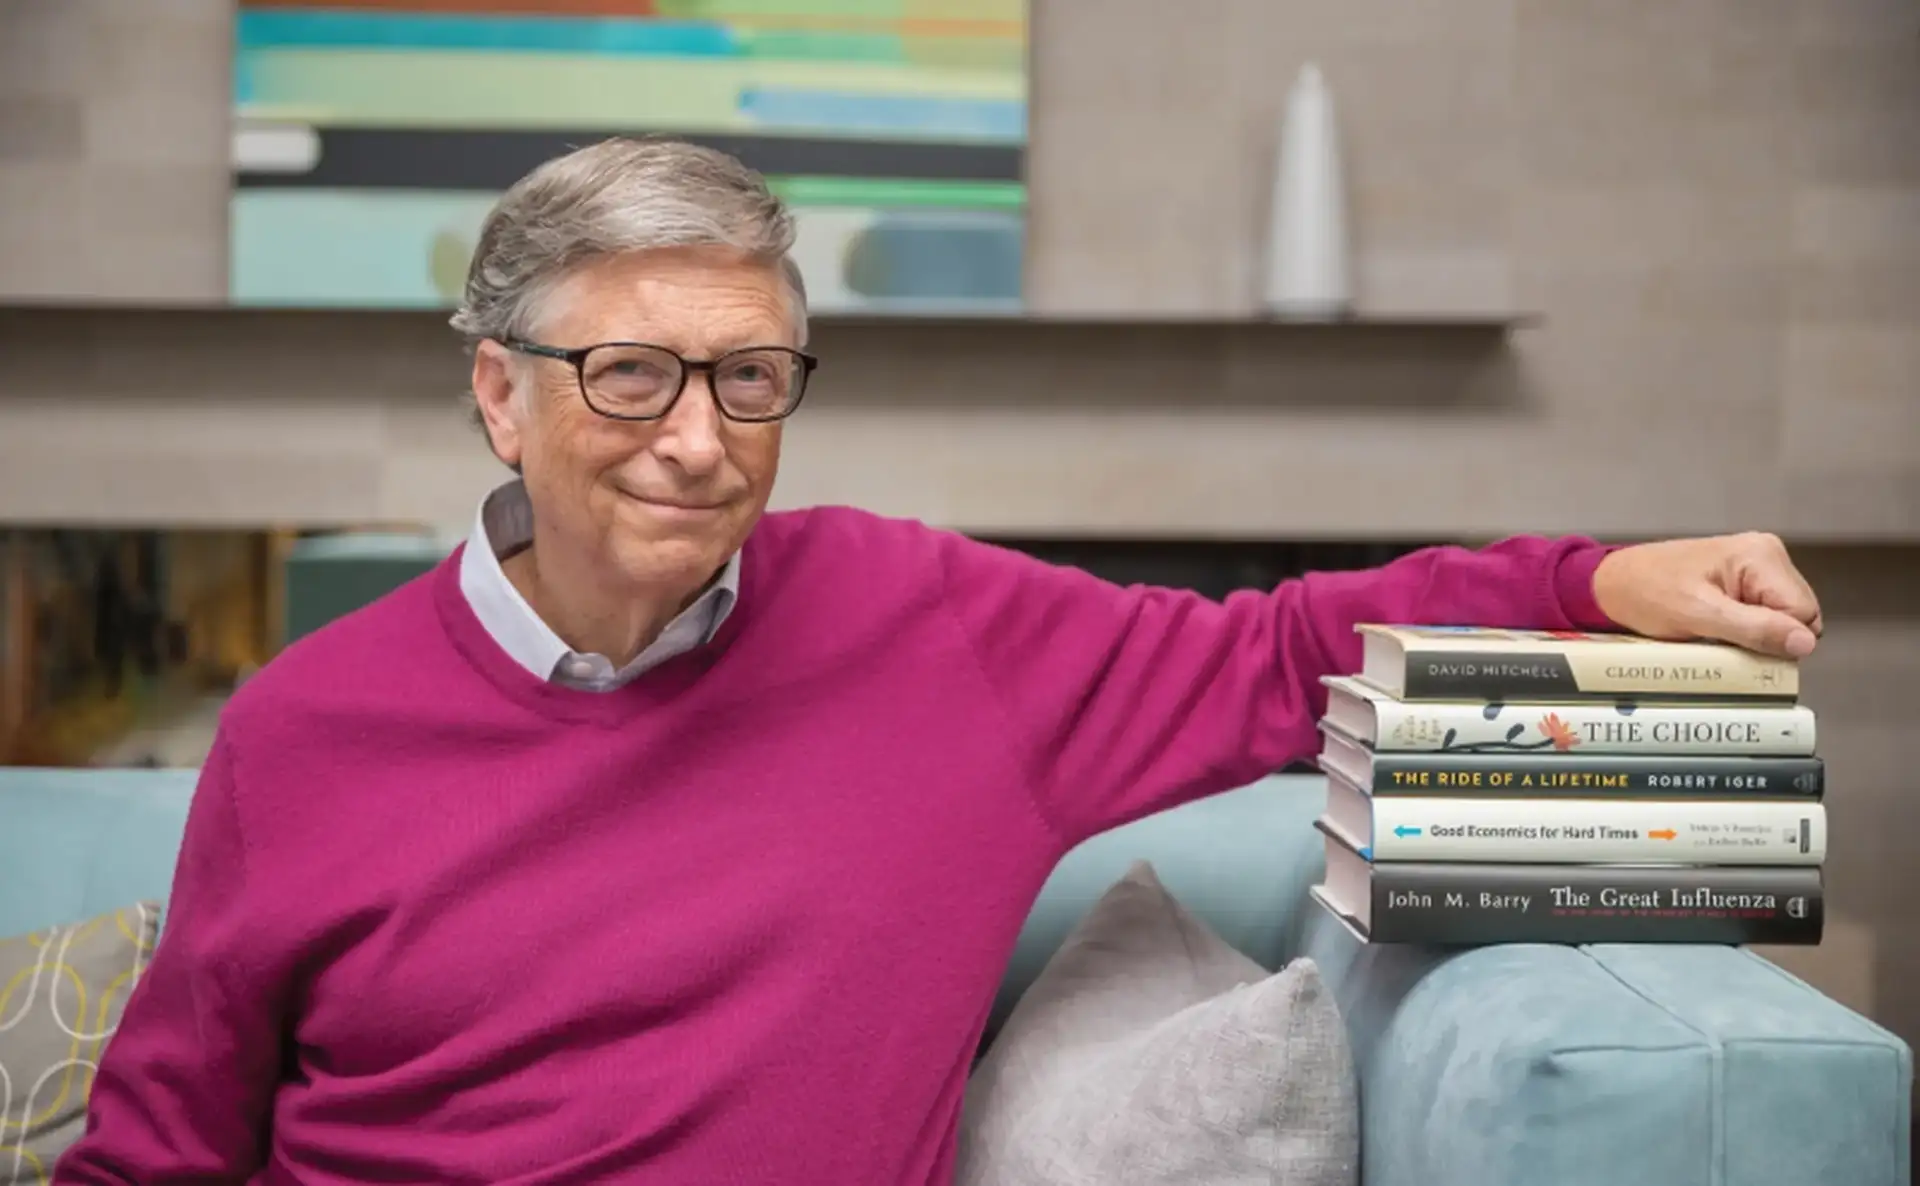 Bill Gates potencia su creatividad con los sueños al leer libros sobre el tema